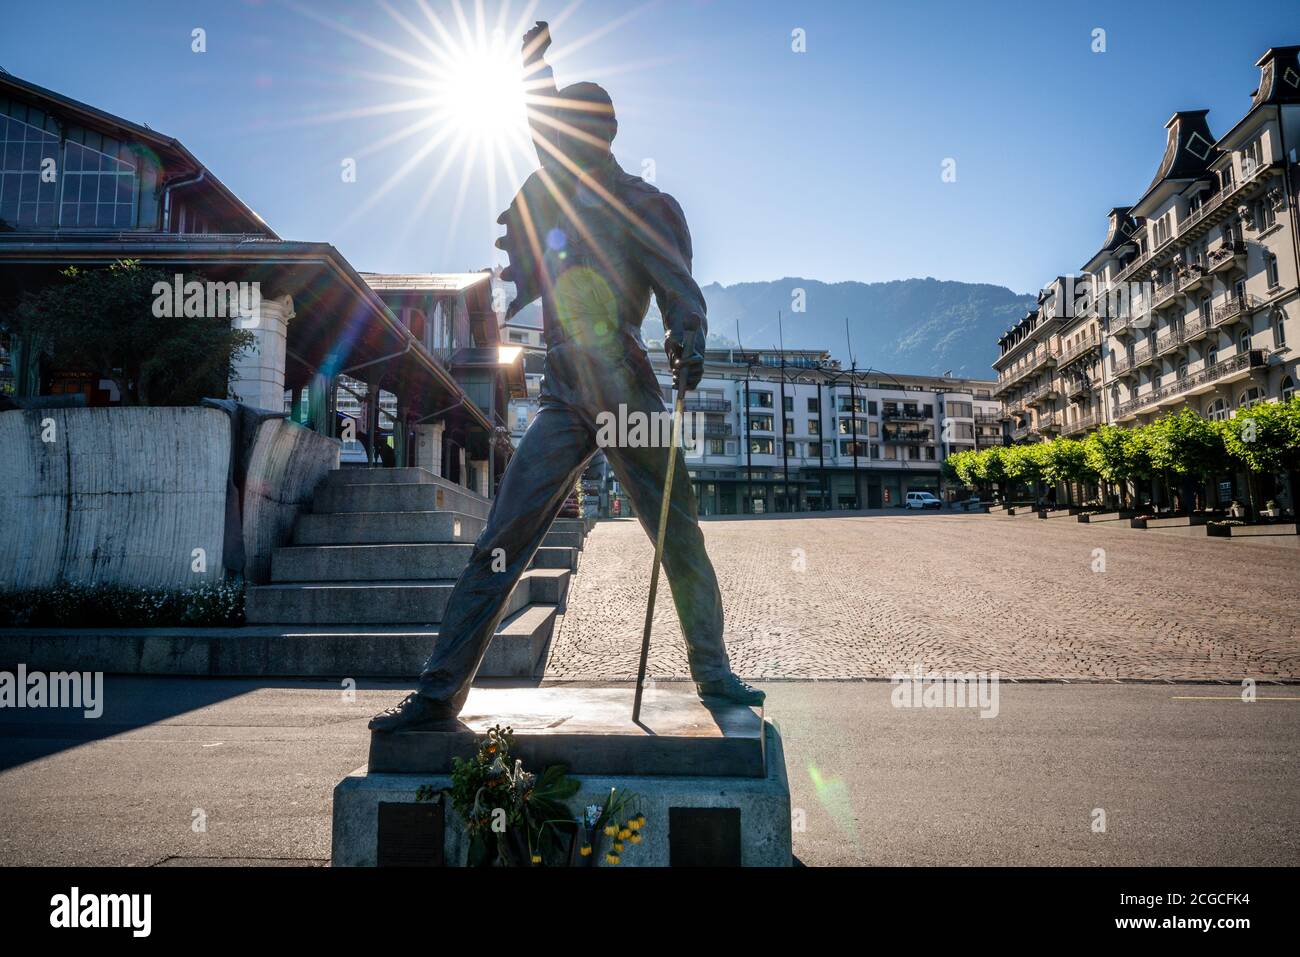 Montreux Suiza , 5 de julio de 2020 : Freddie Mercury ex-Queen grupo de música líder estatua de bronce de la artista Irena y el sol bengalas en la ciudad de Montreux SWI Foto de stock